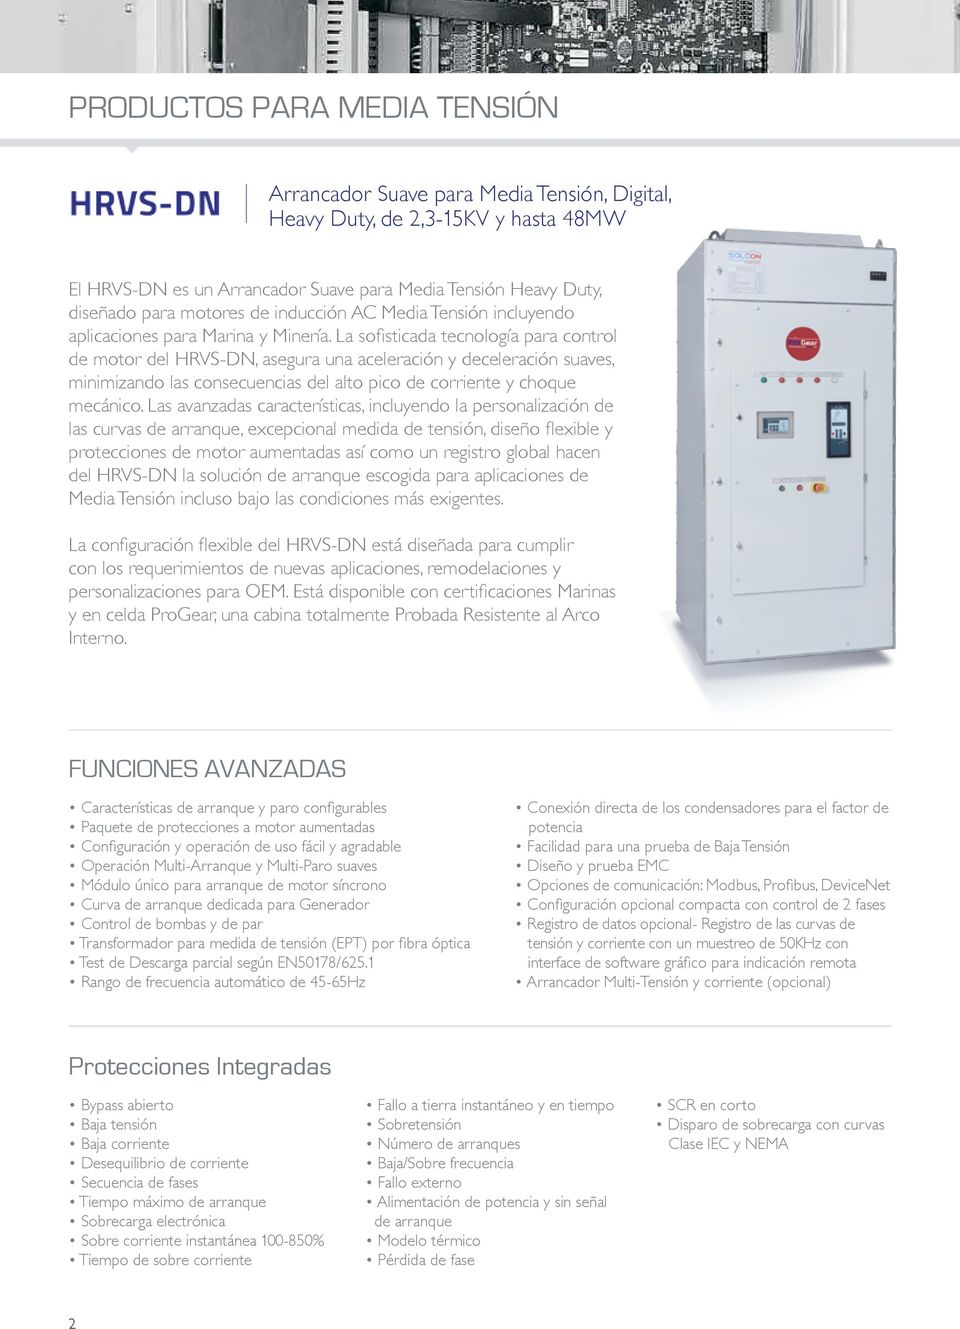 La sofisticada tecnología para control de motor del HRVS-DN, asegura una aceleración y deceleración suaves, minimizando las consecuencias del alto pico de corriente y choque mecánico.